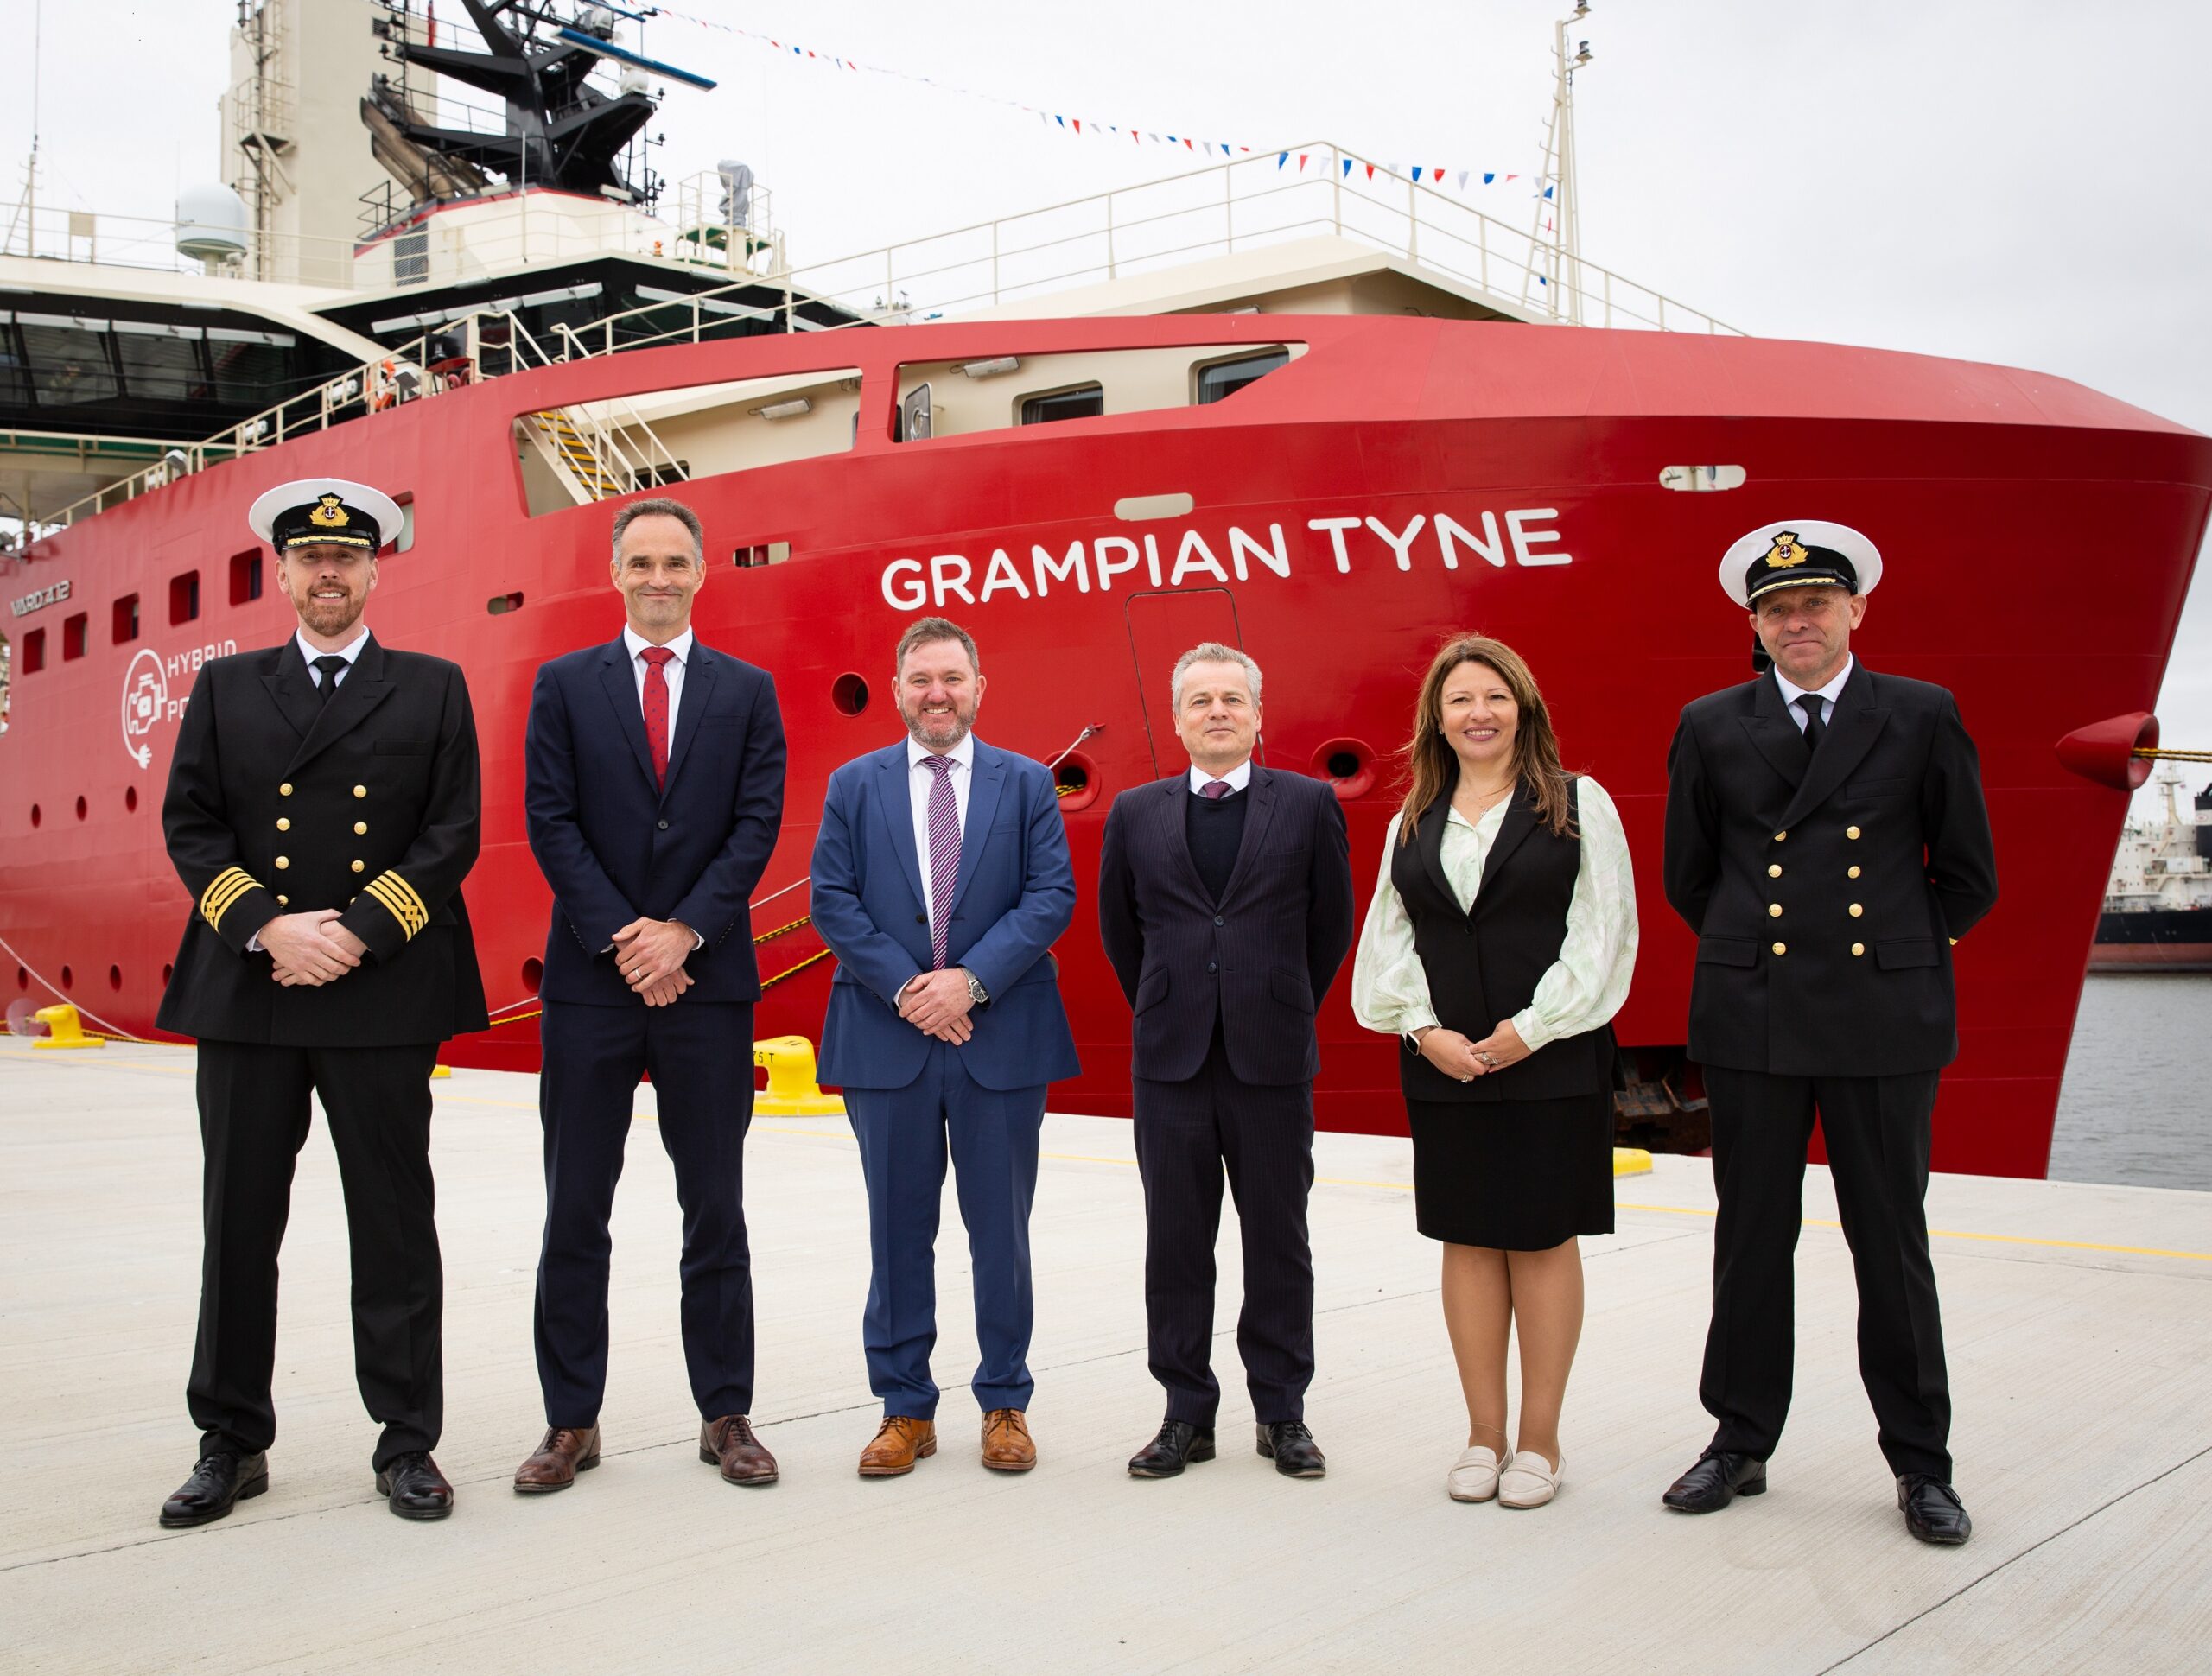 Naming Ceremony for Grampian Tyne vessel